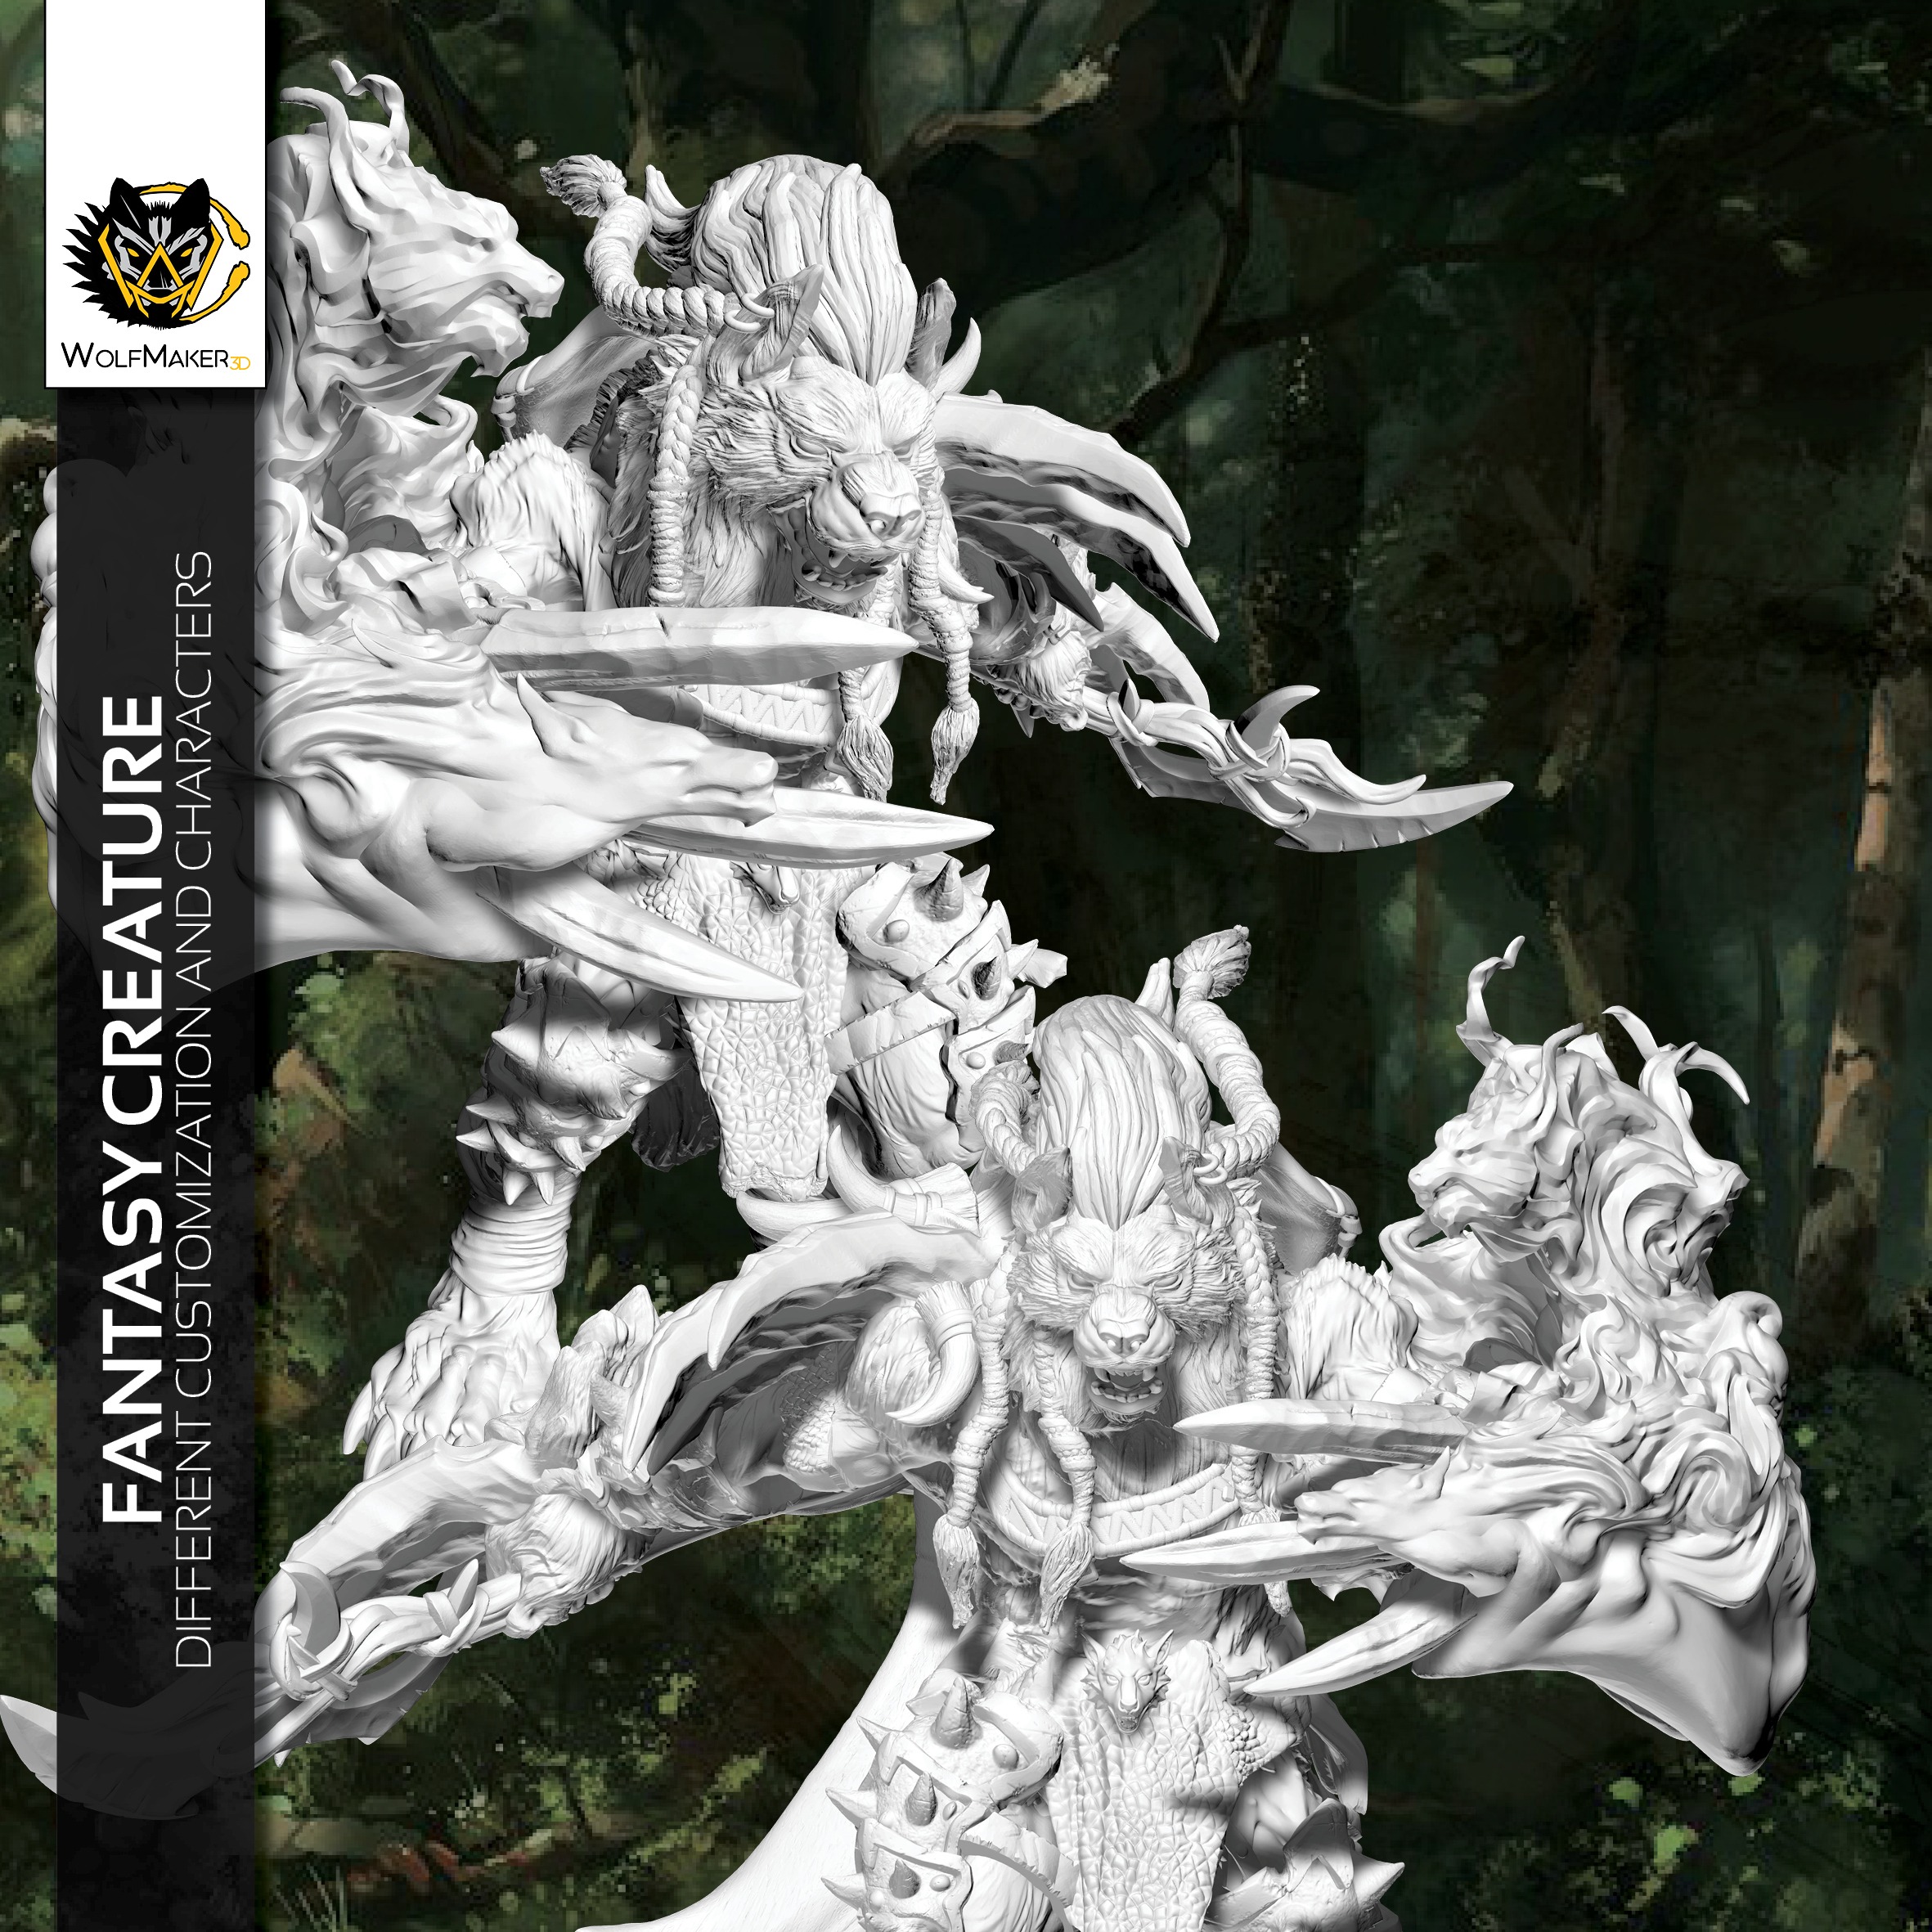 wolfmaker3d Werewolf warrior creature fantasy lycan shapeshifter warriors pack 3d miniature figurines statue bust custom